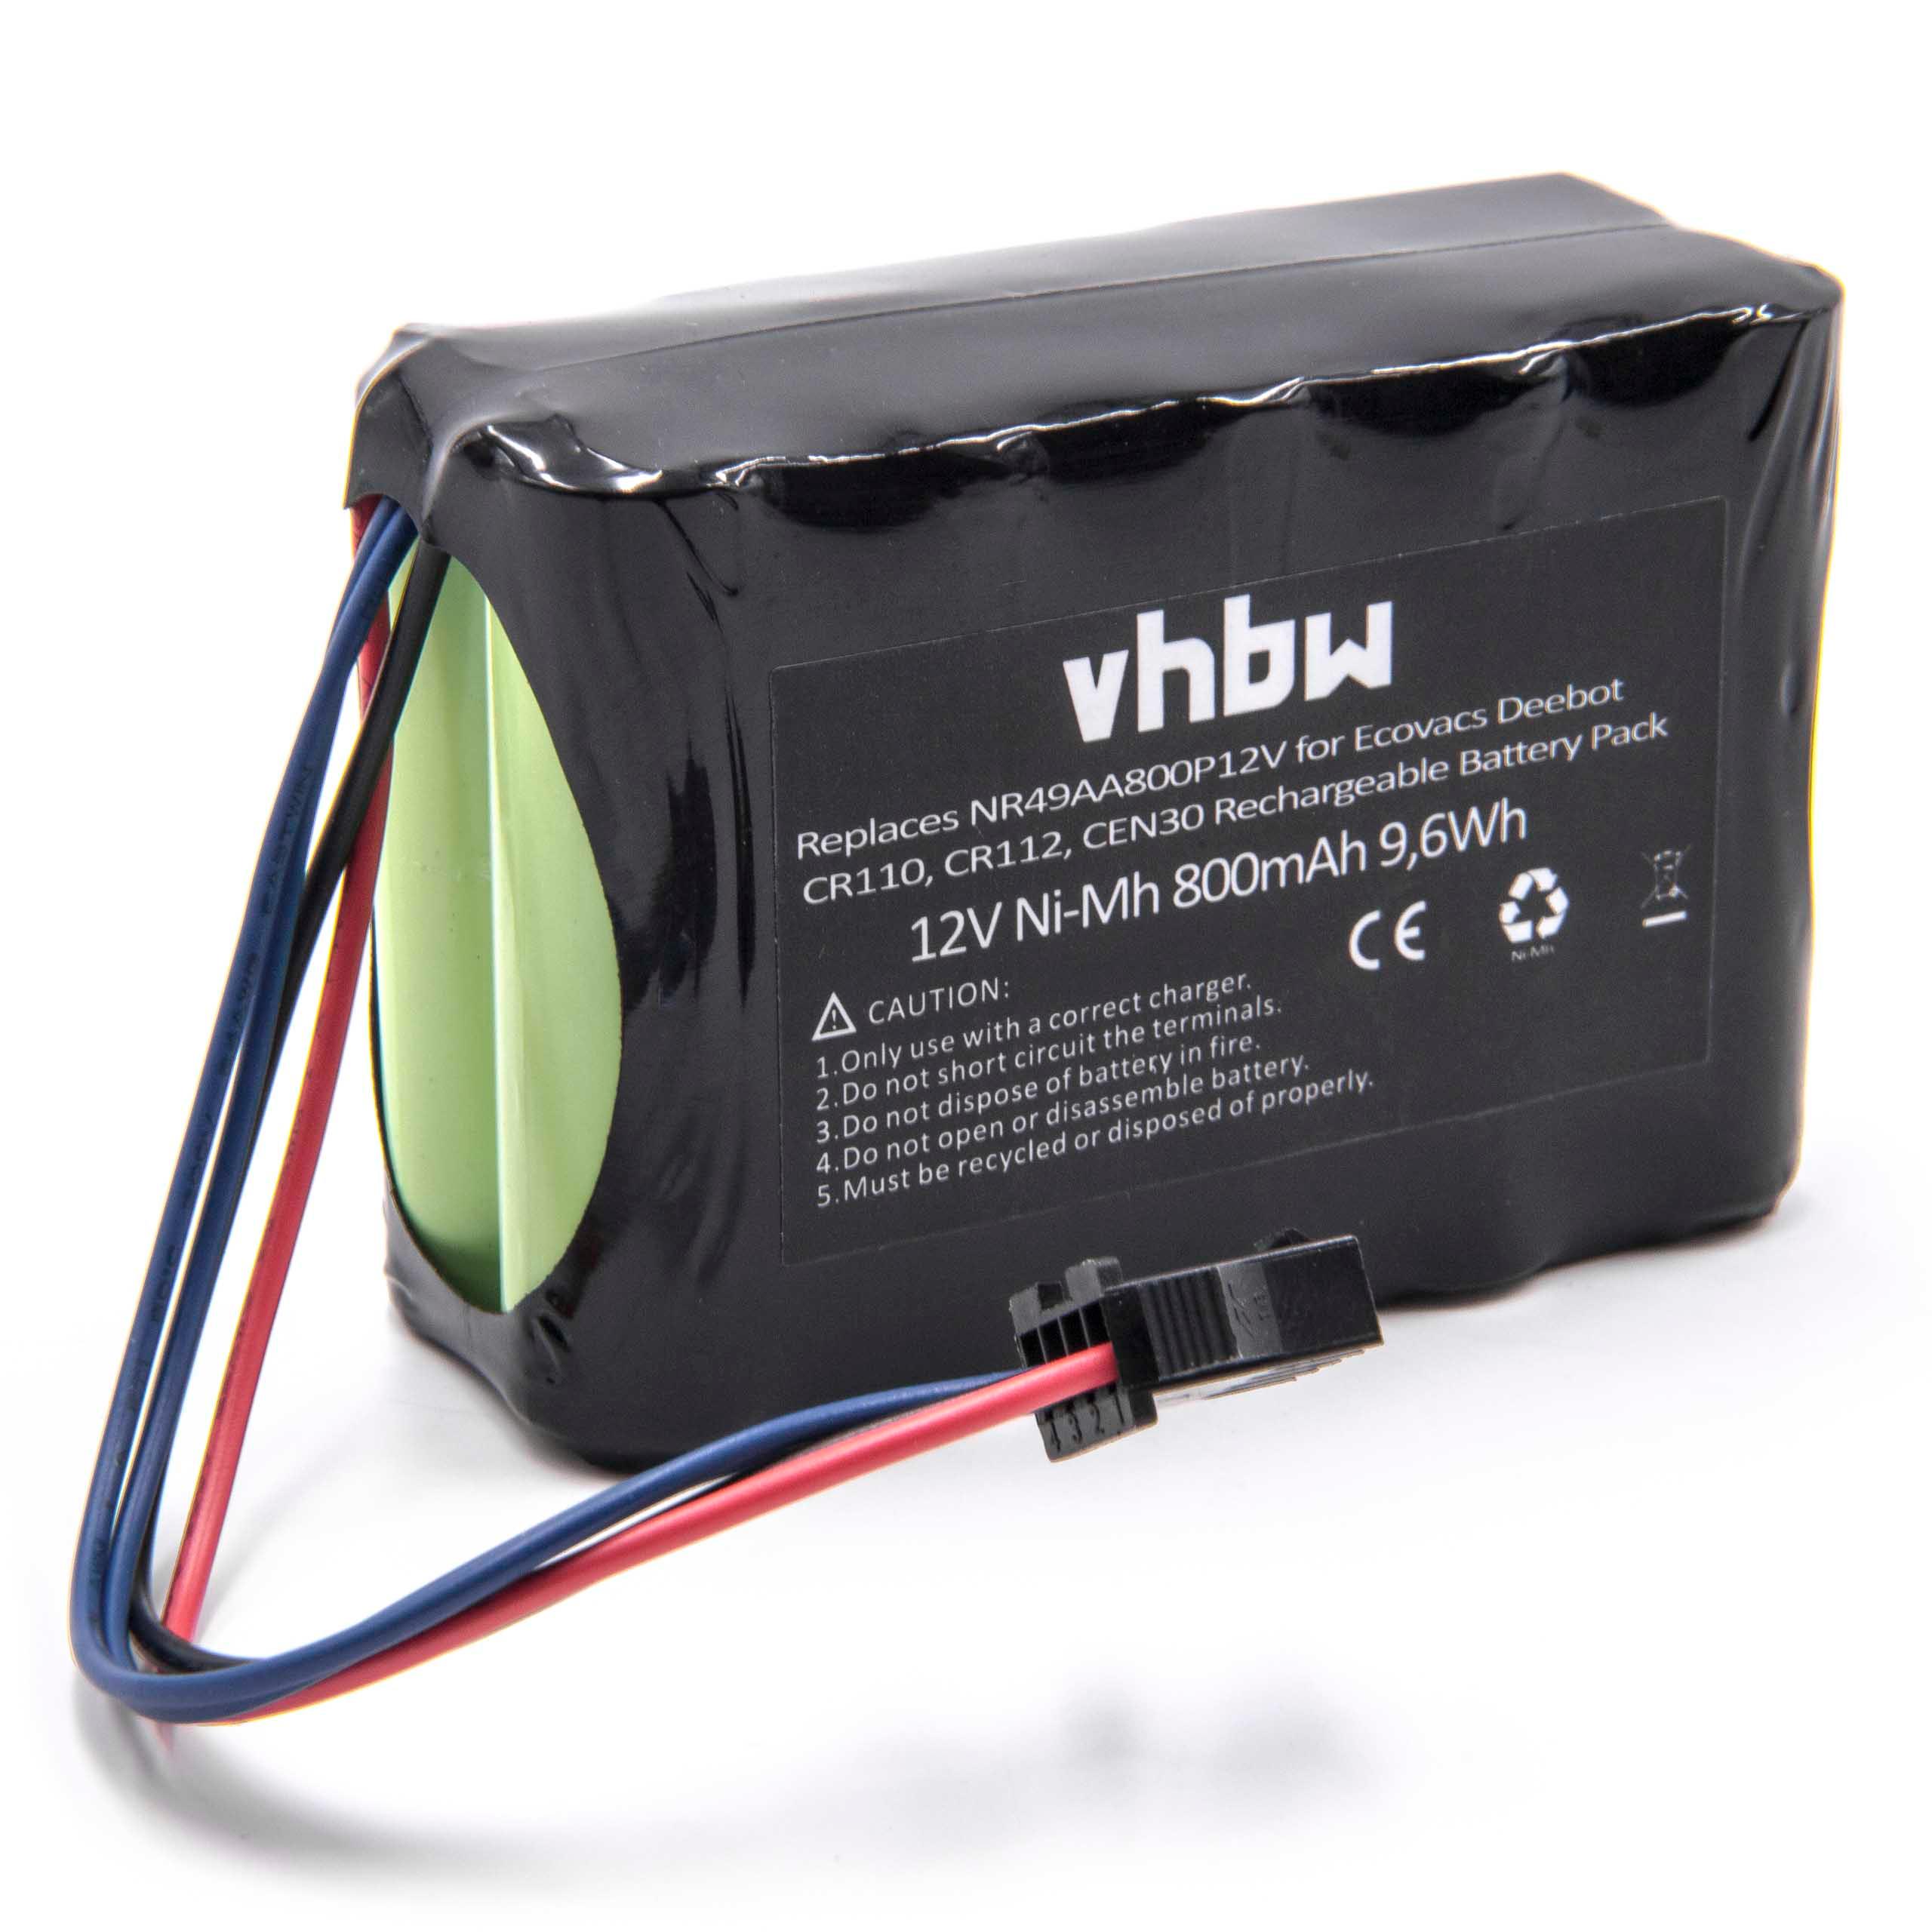 Batterie remplace AEG NR49AA800P12V pour robot aspirateur - 800mAh 12V NiMH